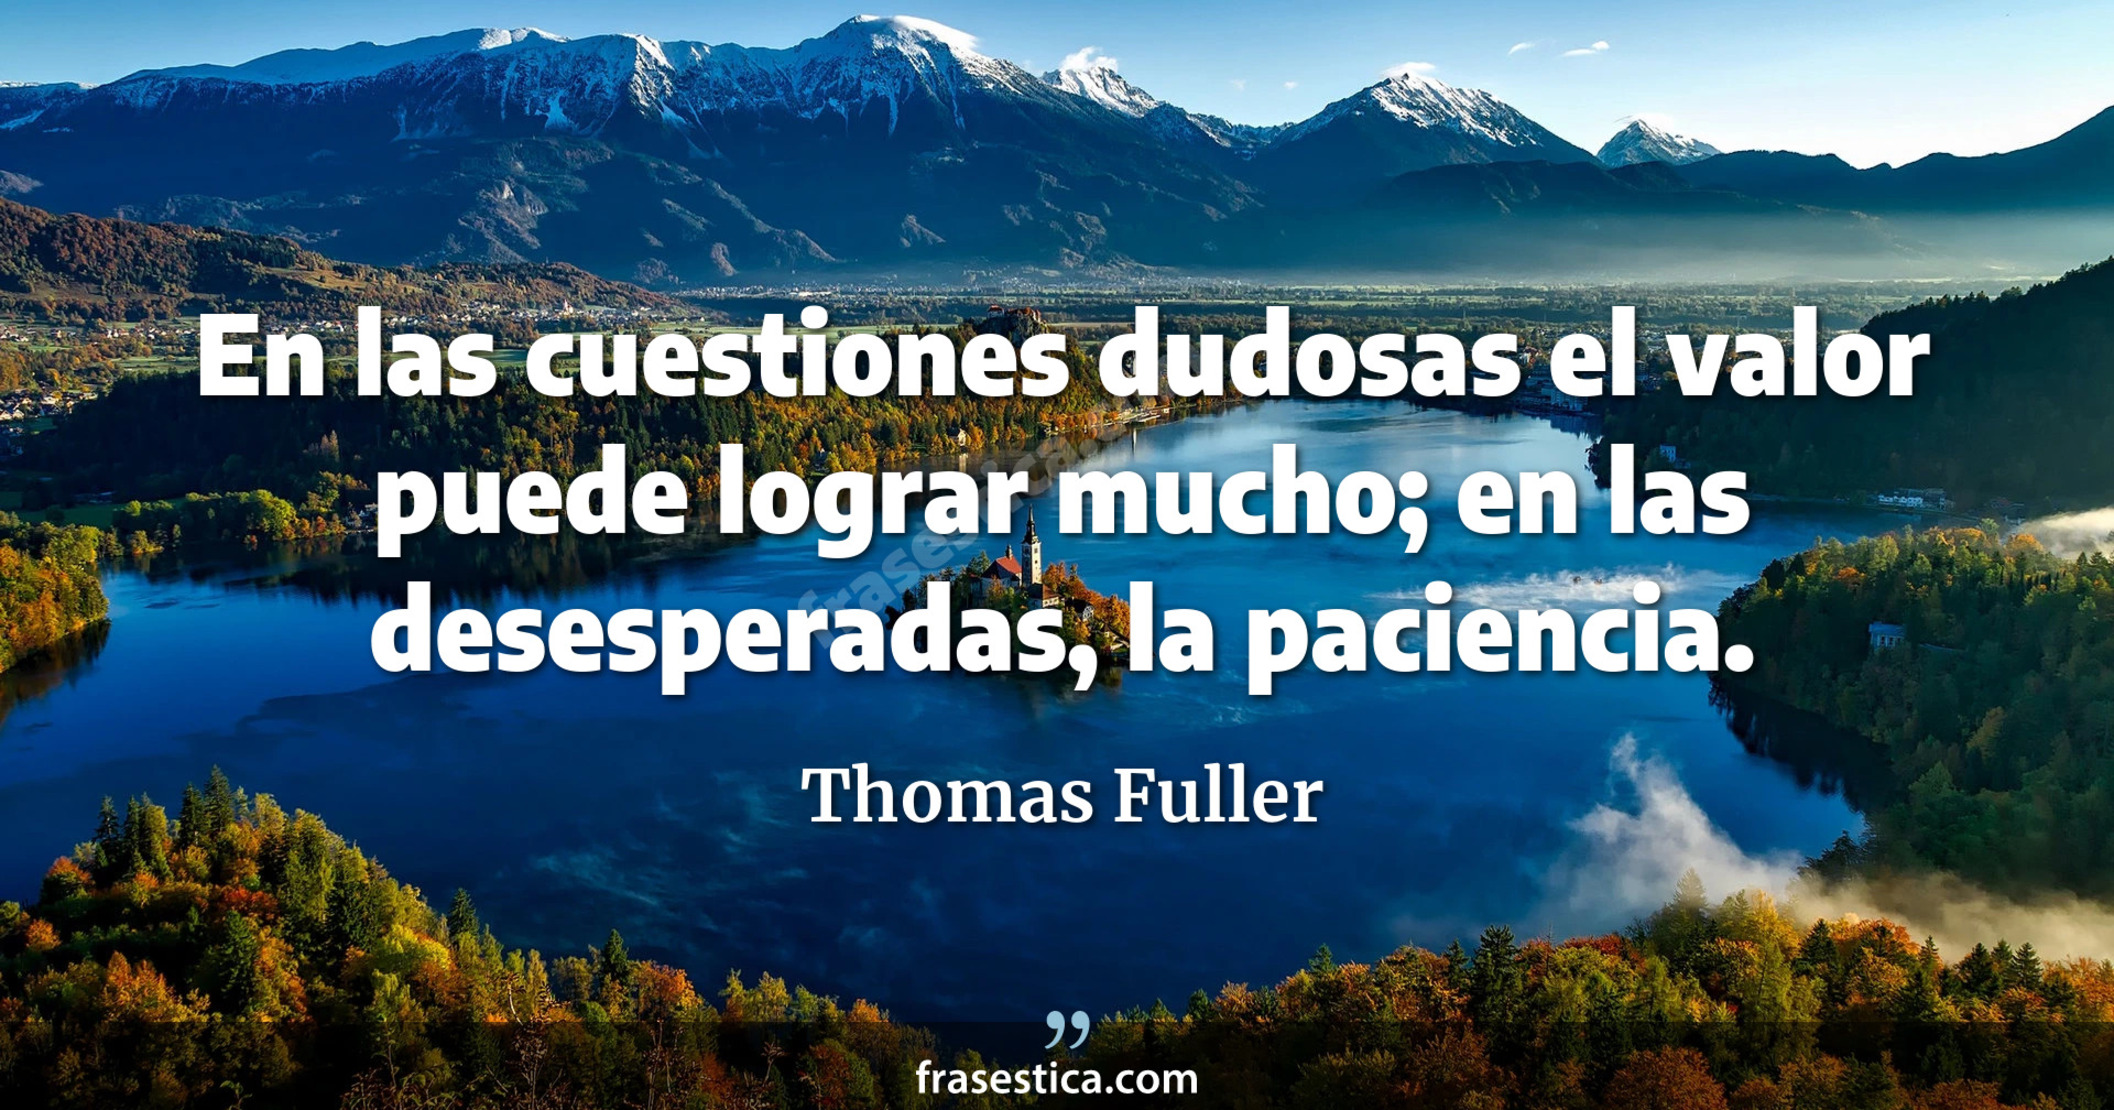 En las cuestiones dudosas el valor puede lograr mucho; en las desesperadas, la paciencia. - Thomas Fuller